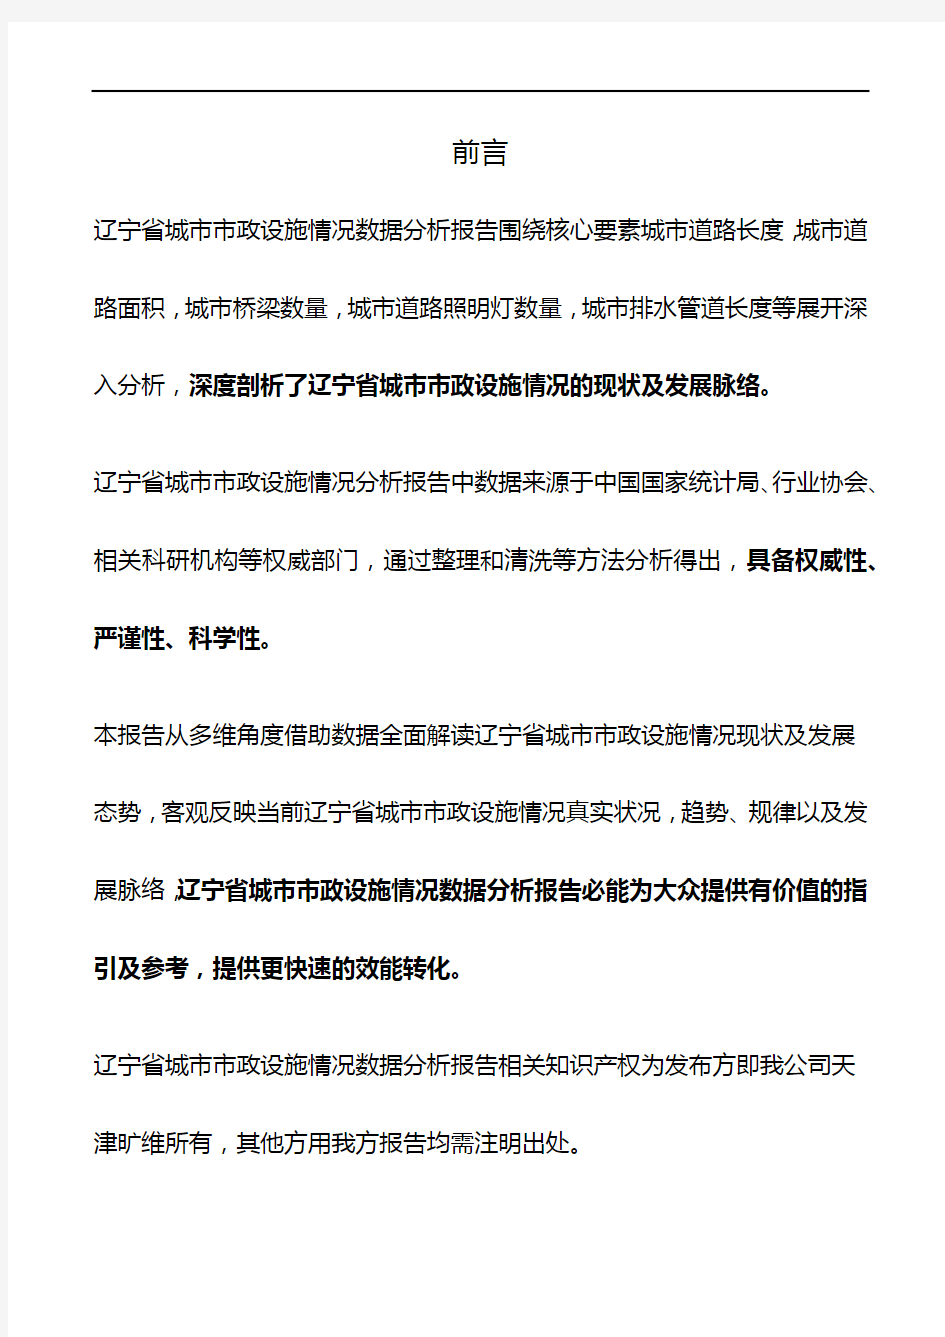 辽宁省城市市政设施情况3年数据分析报告2019版